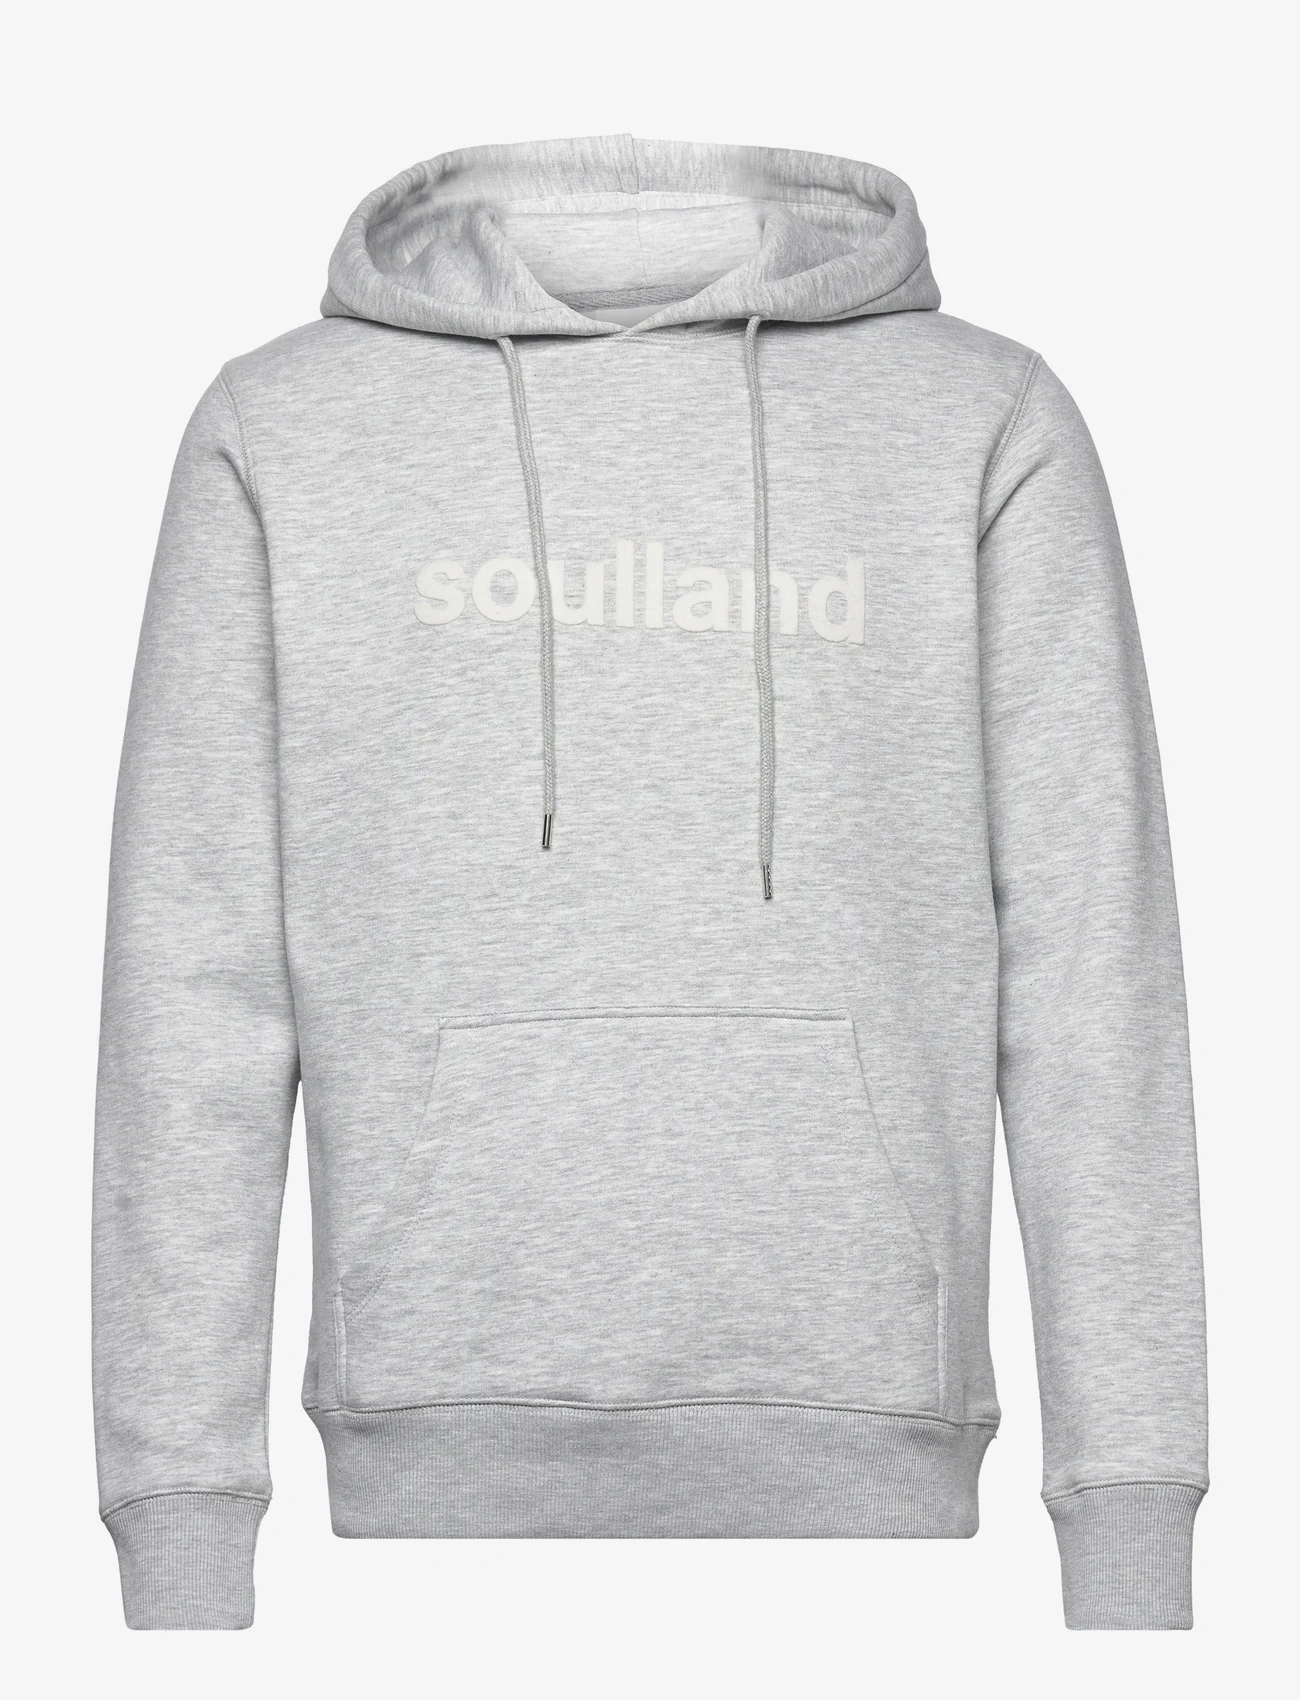 Soulland - Googie hoodie - hoodies - grey melange - 0